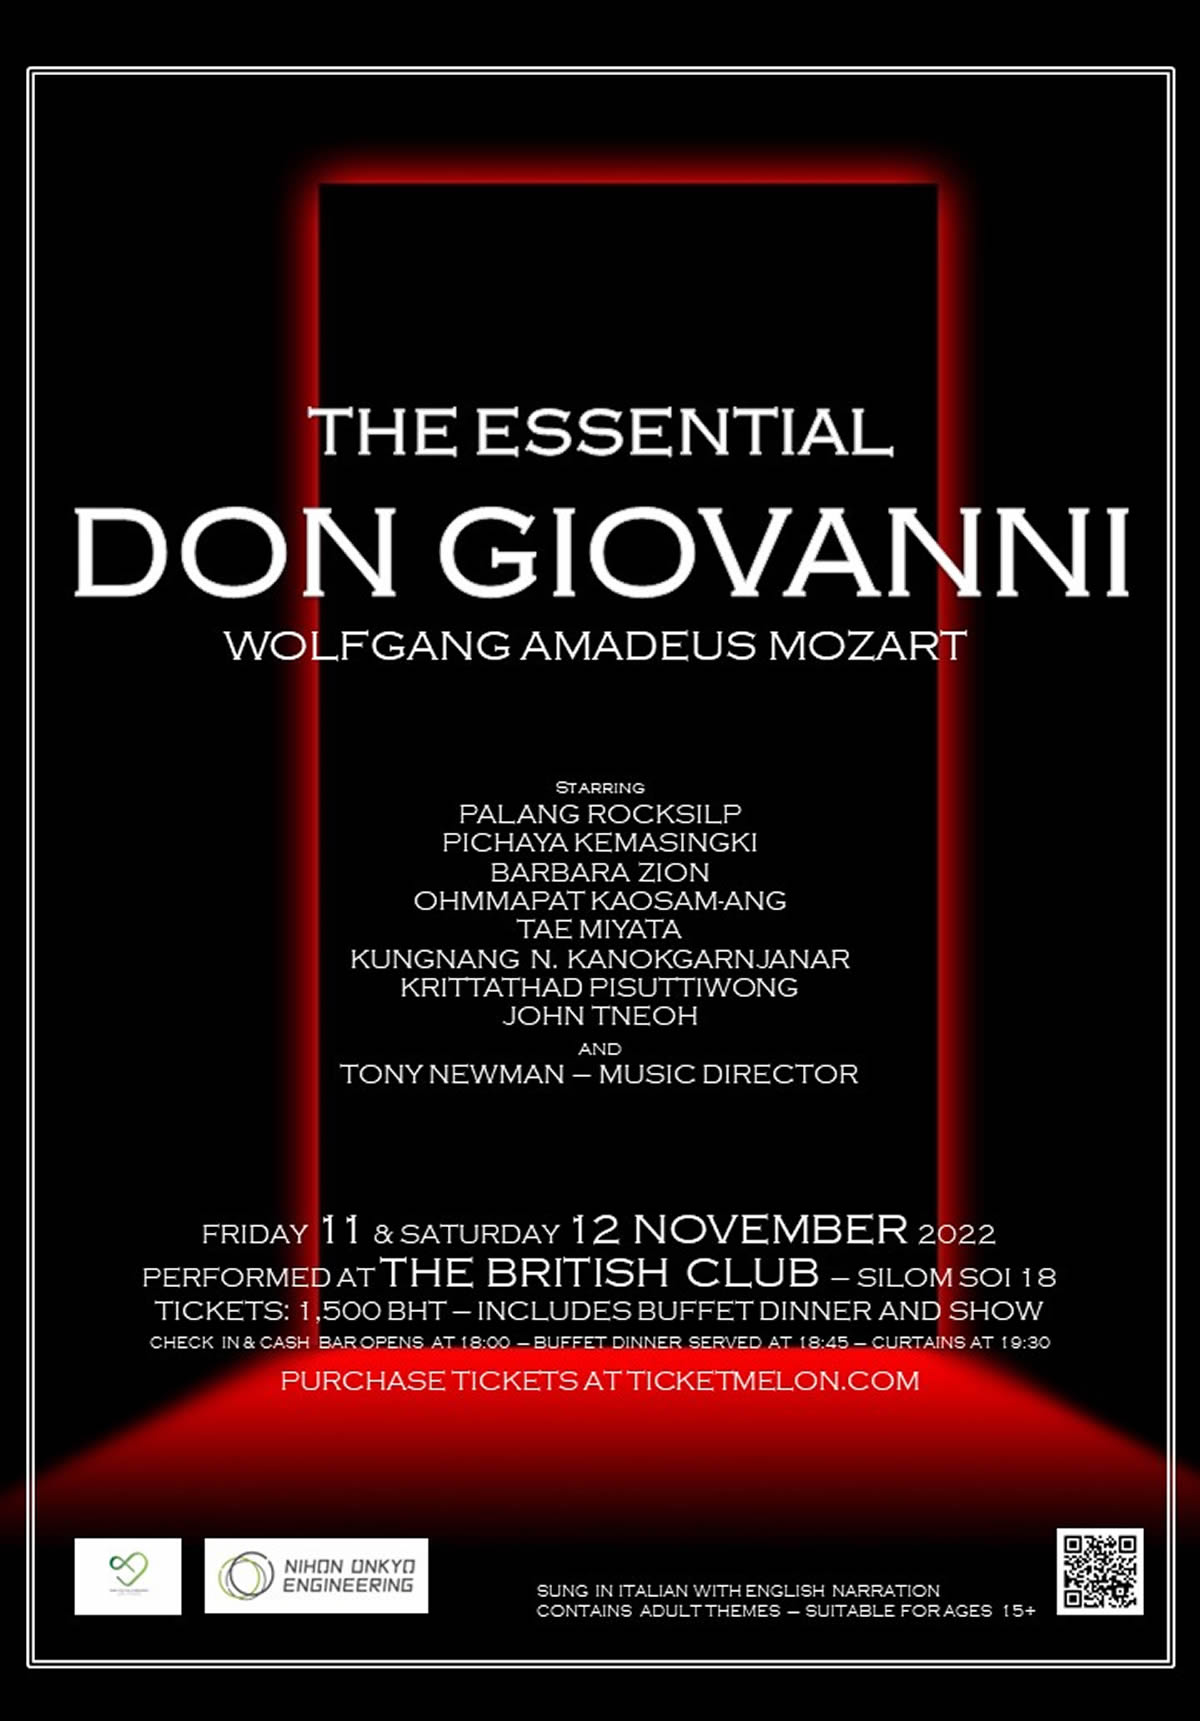 ディナー付オペラ公演「ドン・ジョヴァンニ」、シーロム通りTHE BRITISH CLUBで11月11日（金）・12日（土）開催